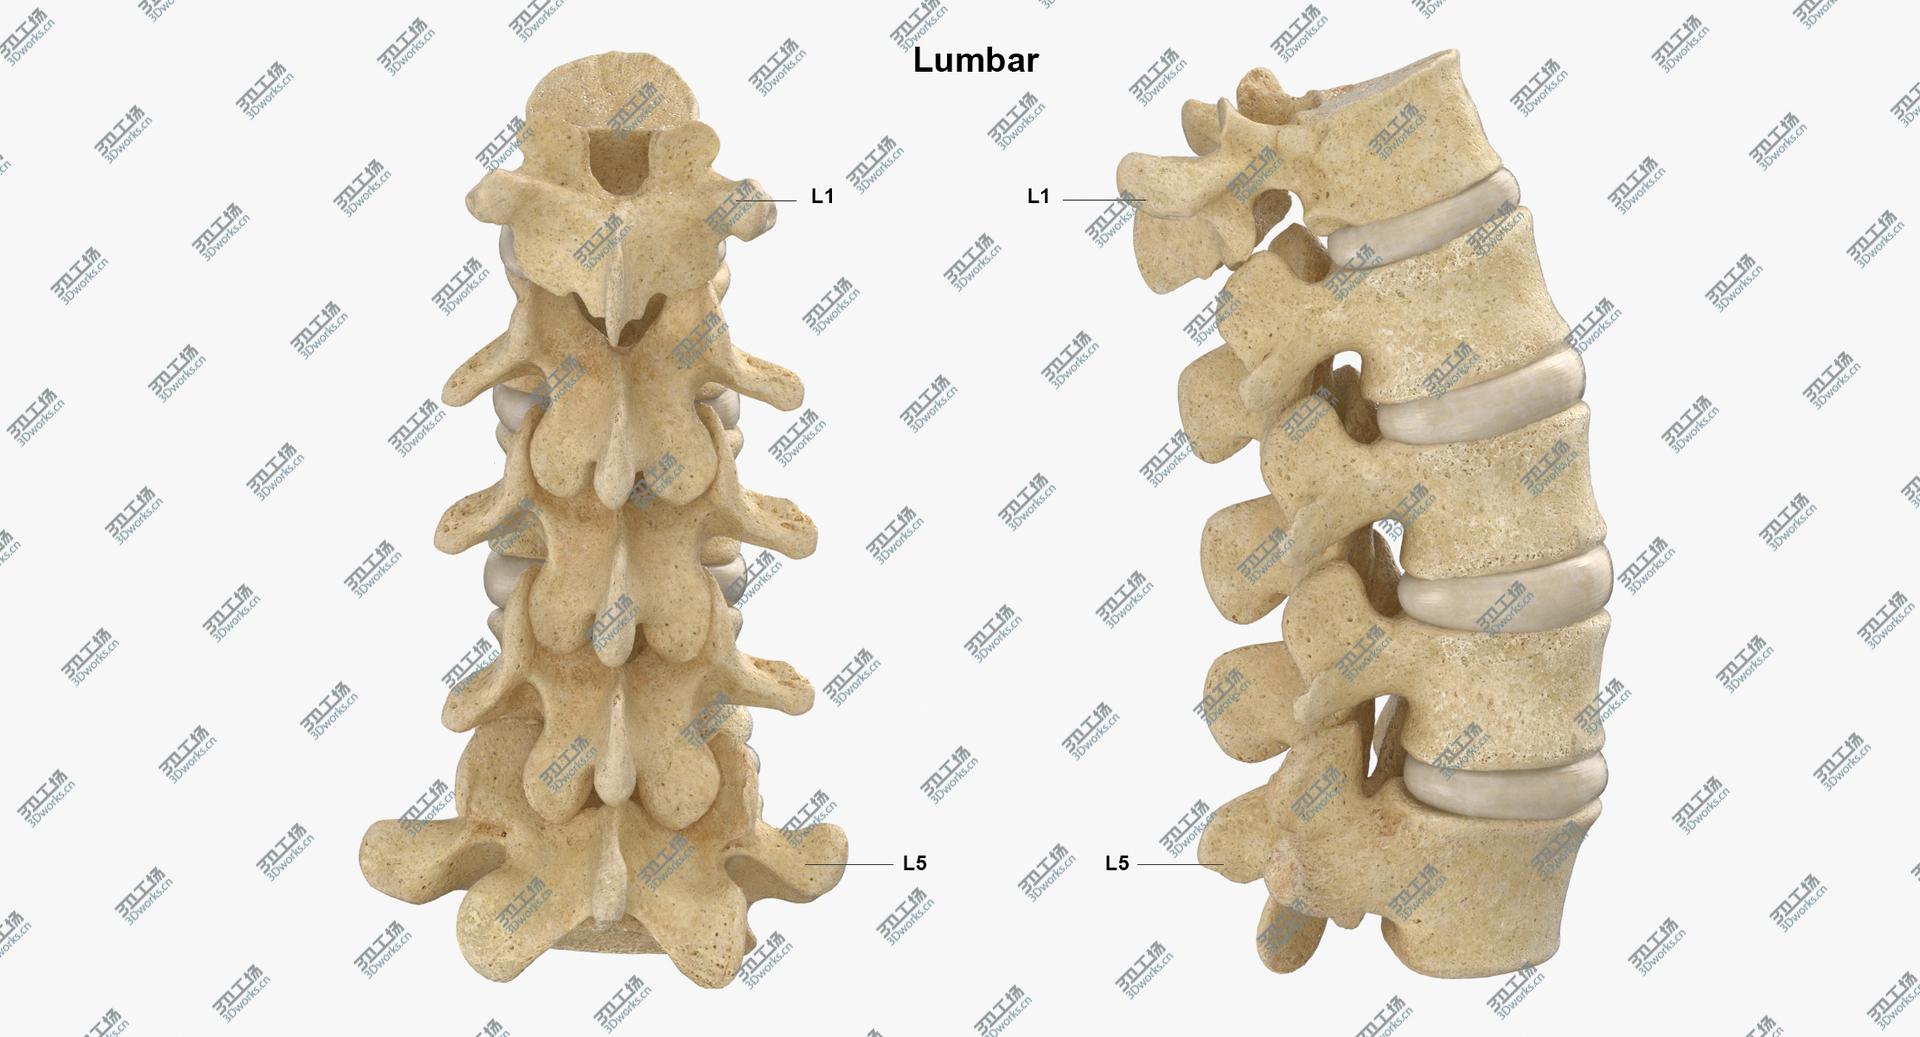 images/goods_img/2021040234/Real Human Lumbar and Sacrum Vertebrae L1 to S5 Bones With Intervertibral Disks 01 model/4.jpg